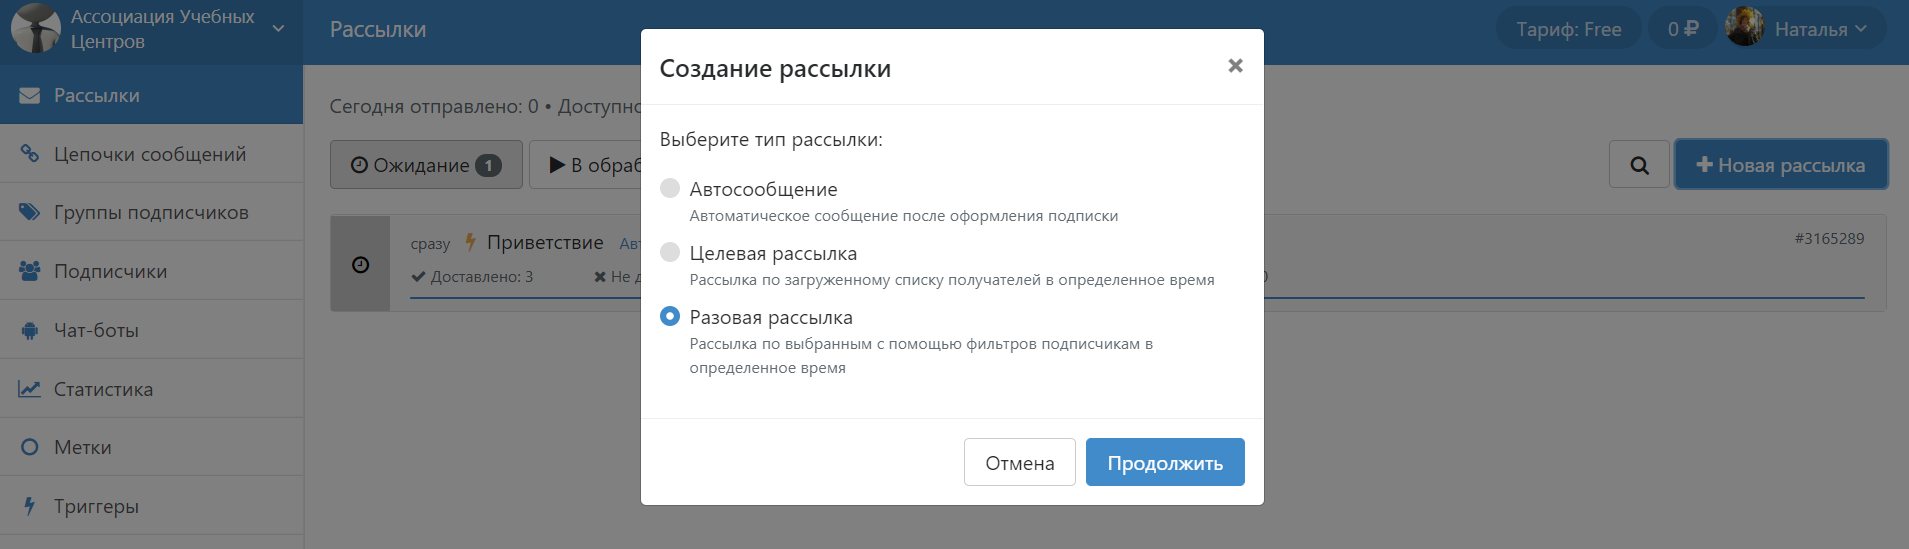 Как сделать массовую рассылку во ВКонтакте